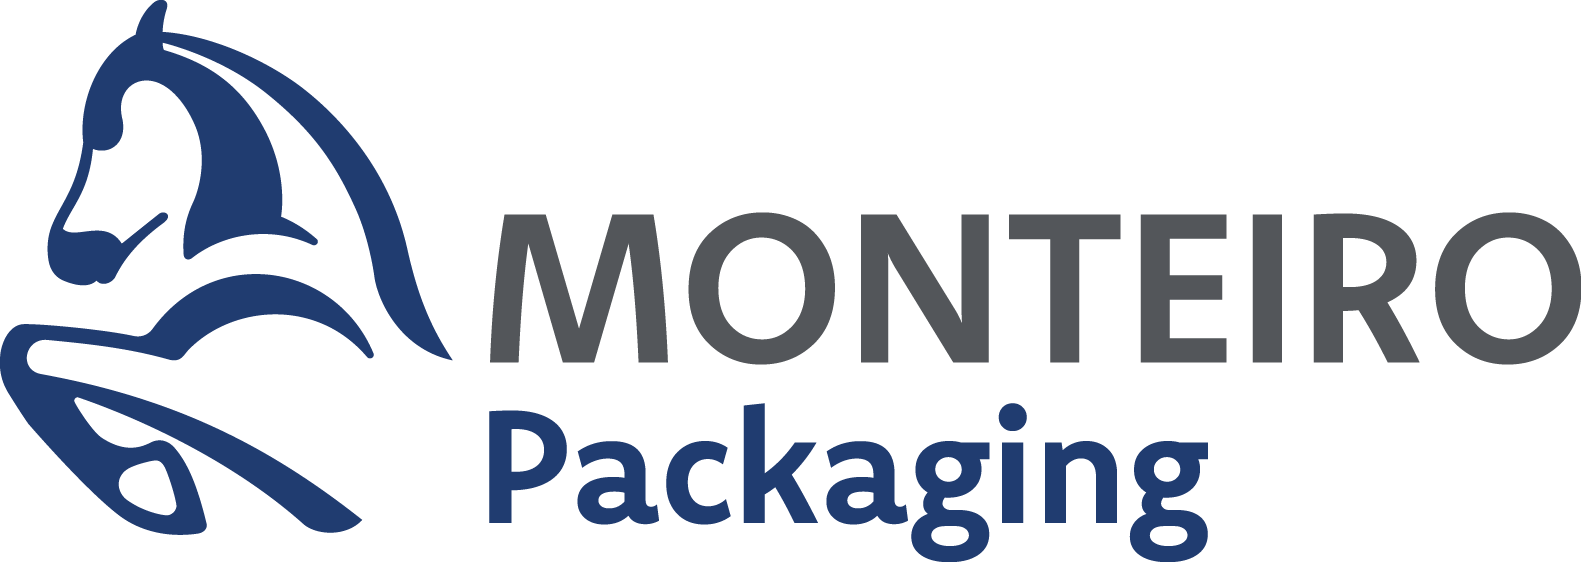 Monteiro Packaging